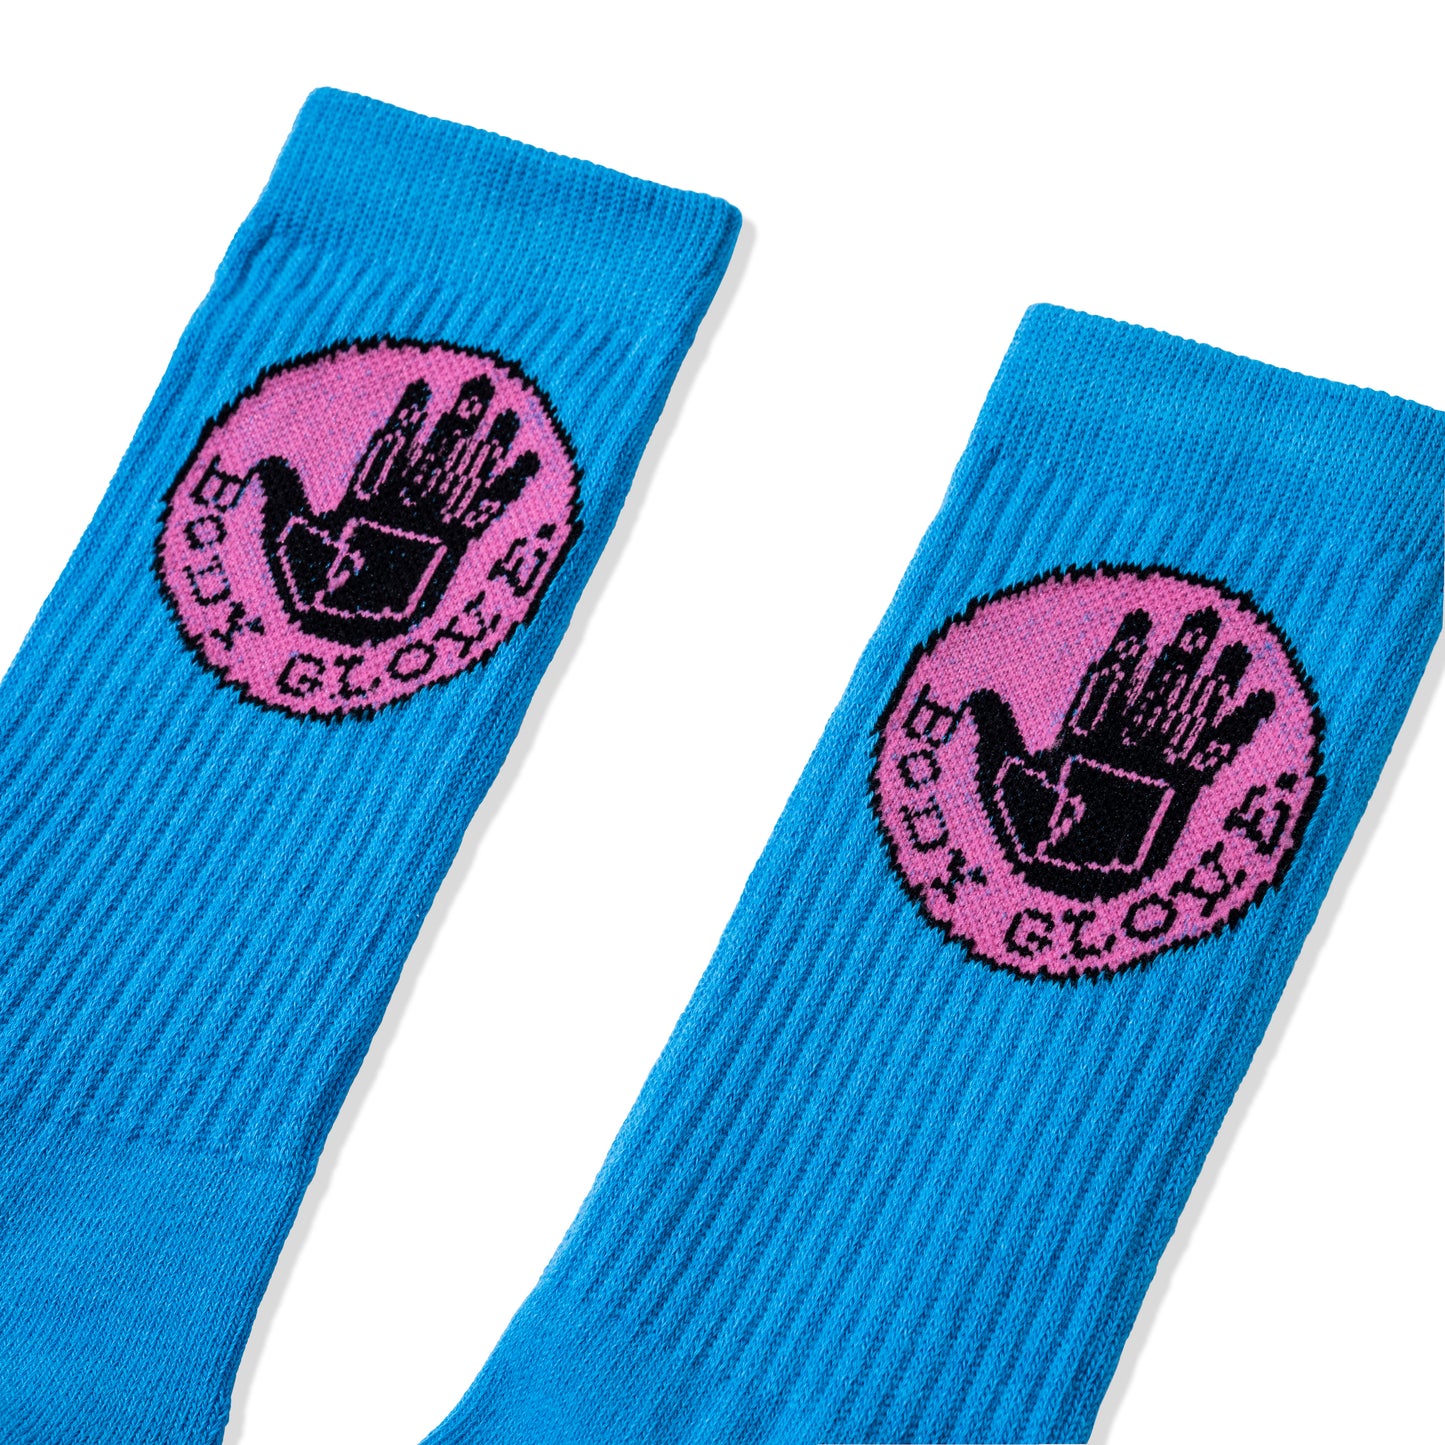 ASSC X Body Glove Toenails Socks - Blue